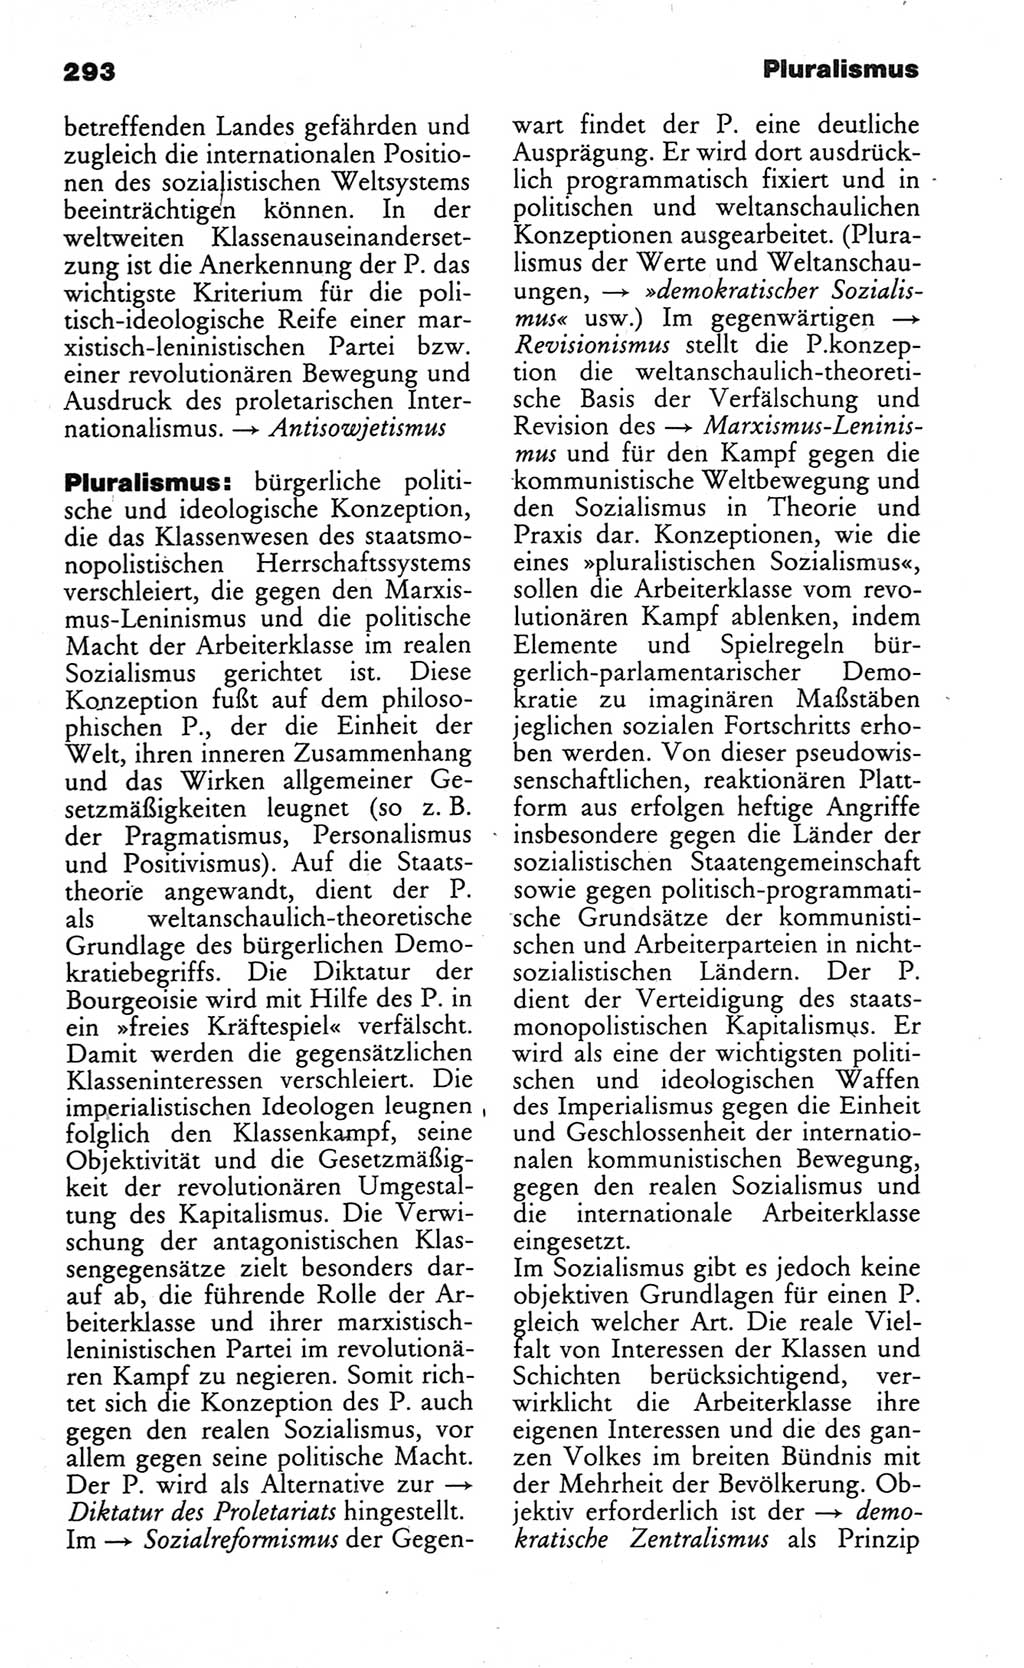 Wörterbuch des wissenschaftlichen Kommunismus [Deutsche Demokratische Republik (DDR)] 1984, Seite 293 (Wb. wiss. Komm. DDR 1984, S. 293)